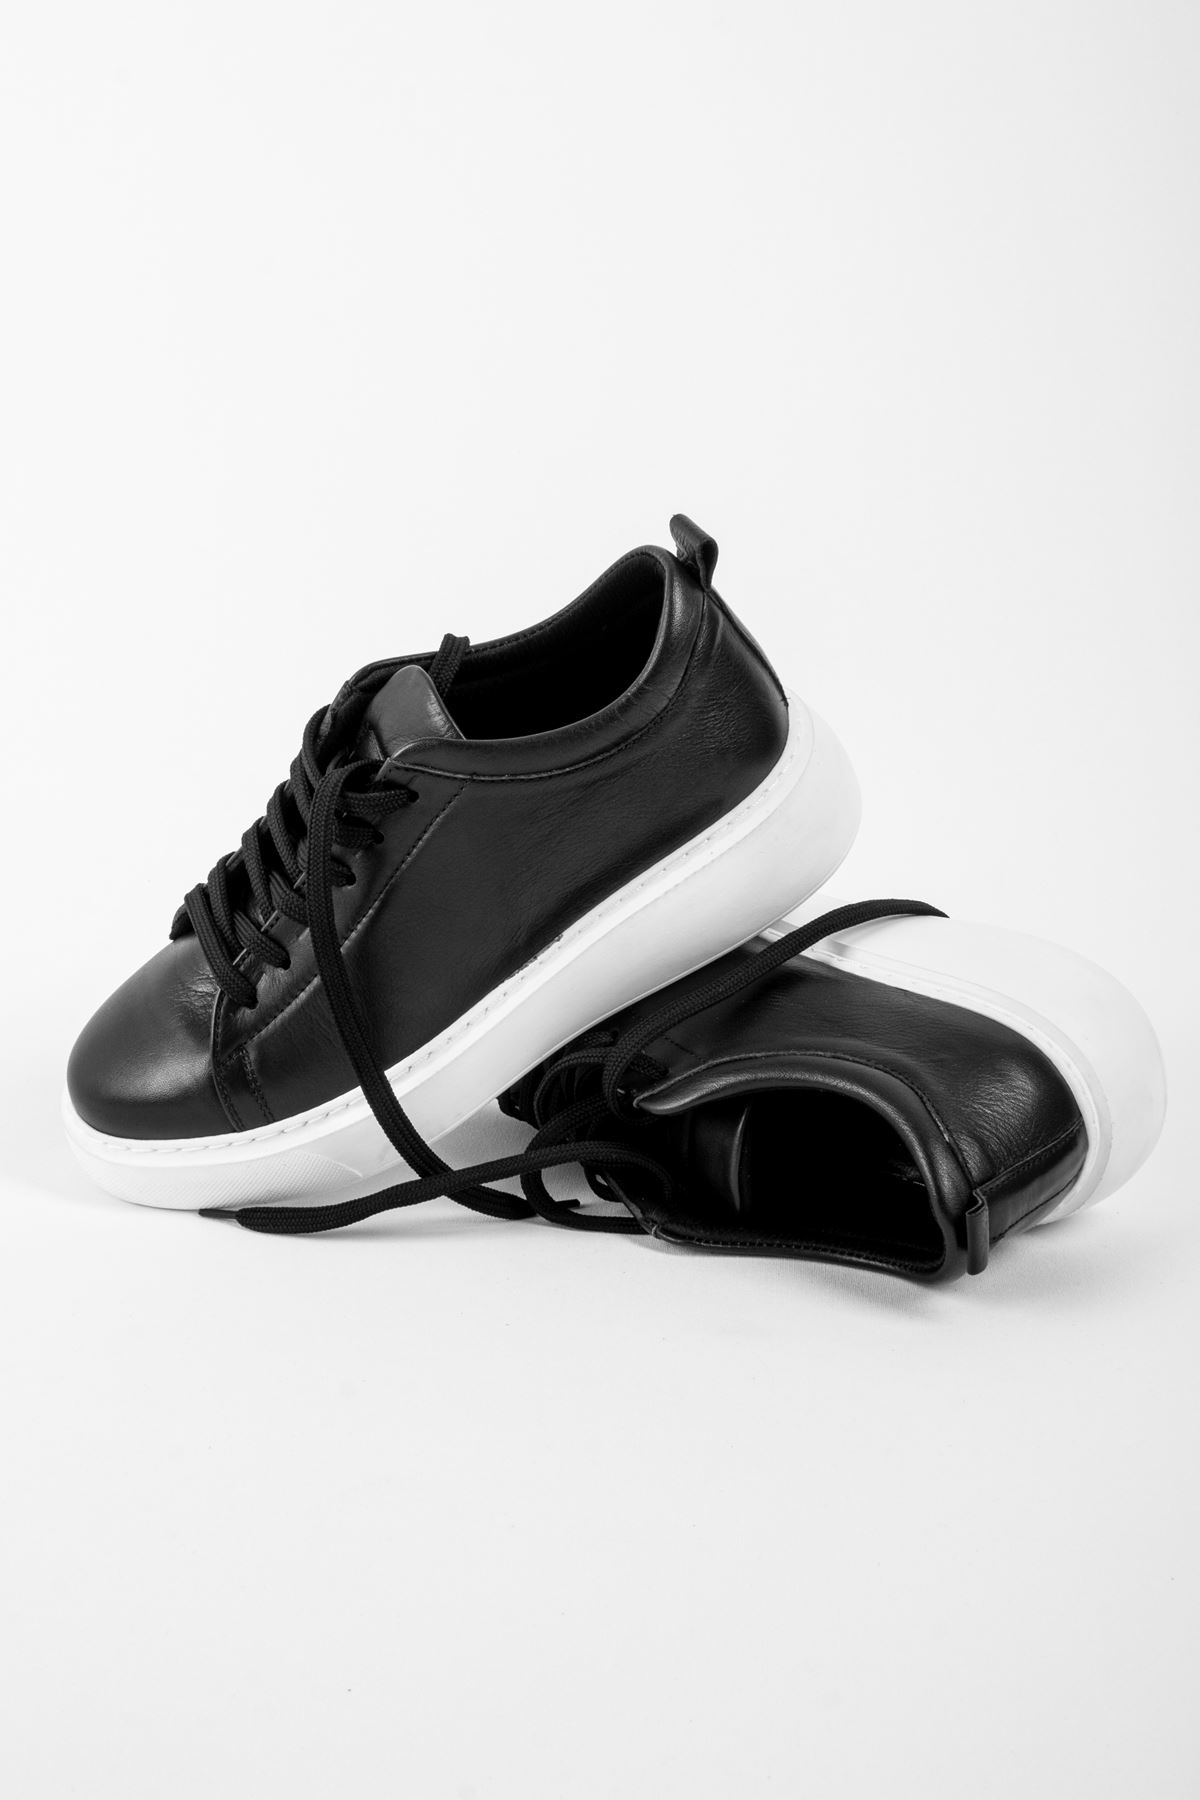 Duncan Kadın Bağcıklı Hakiki Deri Spor Ayakkabı-Siyah Beyaz